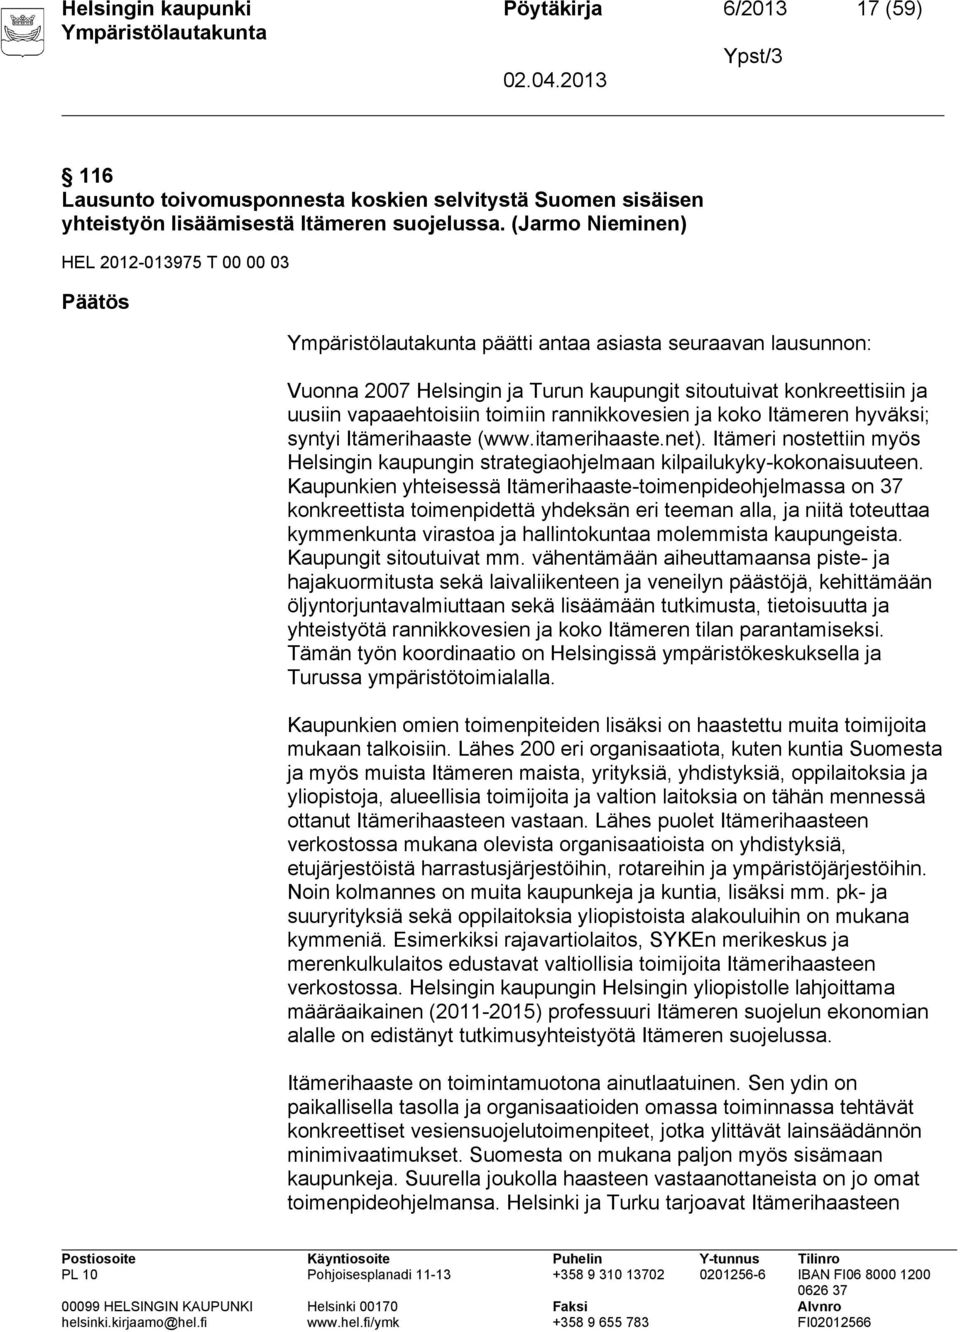 rannikkovesien ja koko Itämeren hyväksi; syntyi Itämerihaaste (www.itamerihaaste.net). Itämeri nostettiin myös Helsingin kaupungin strategiaohjelmaan kilpailukyky kokonaisuuteen.